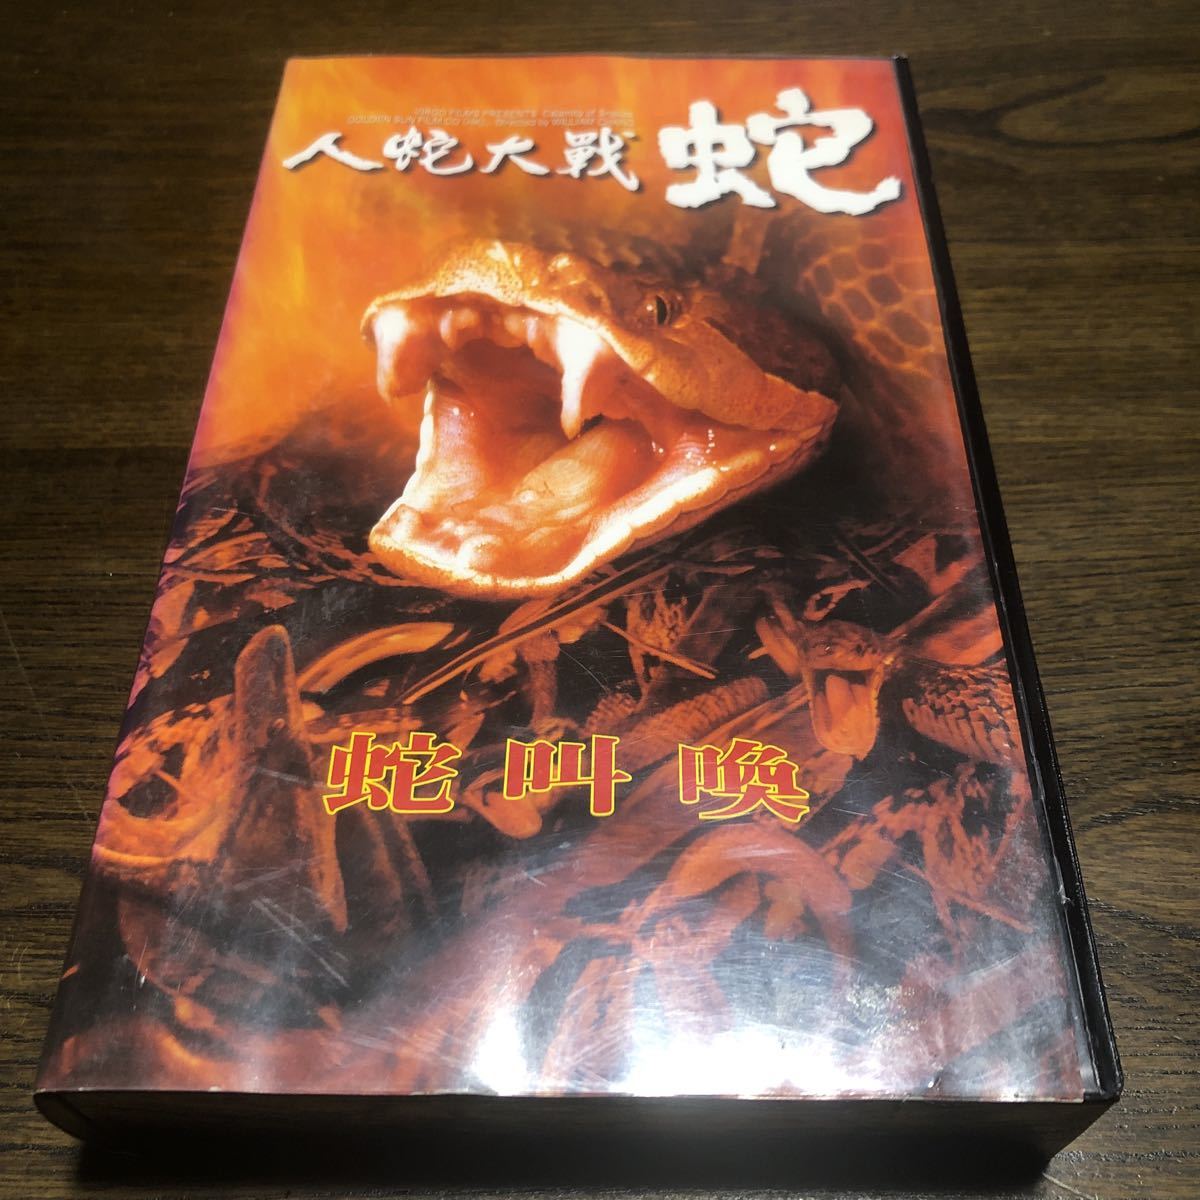 VHS 人蛇大戦 蛇 字幕スーパー 1982年 香港 台湾映画 ウィルアム・チャング ウォー・ユン リ・ミン・ロウ ビデオテープの画像1